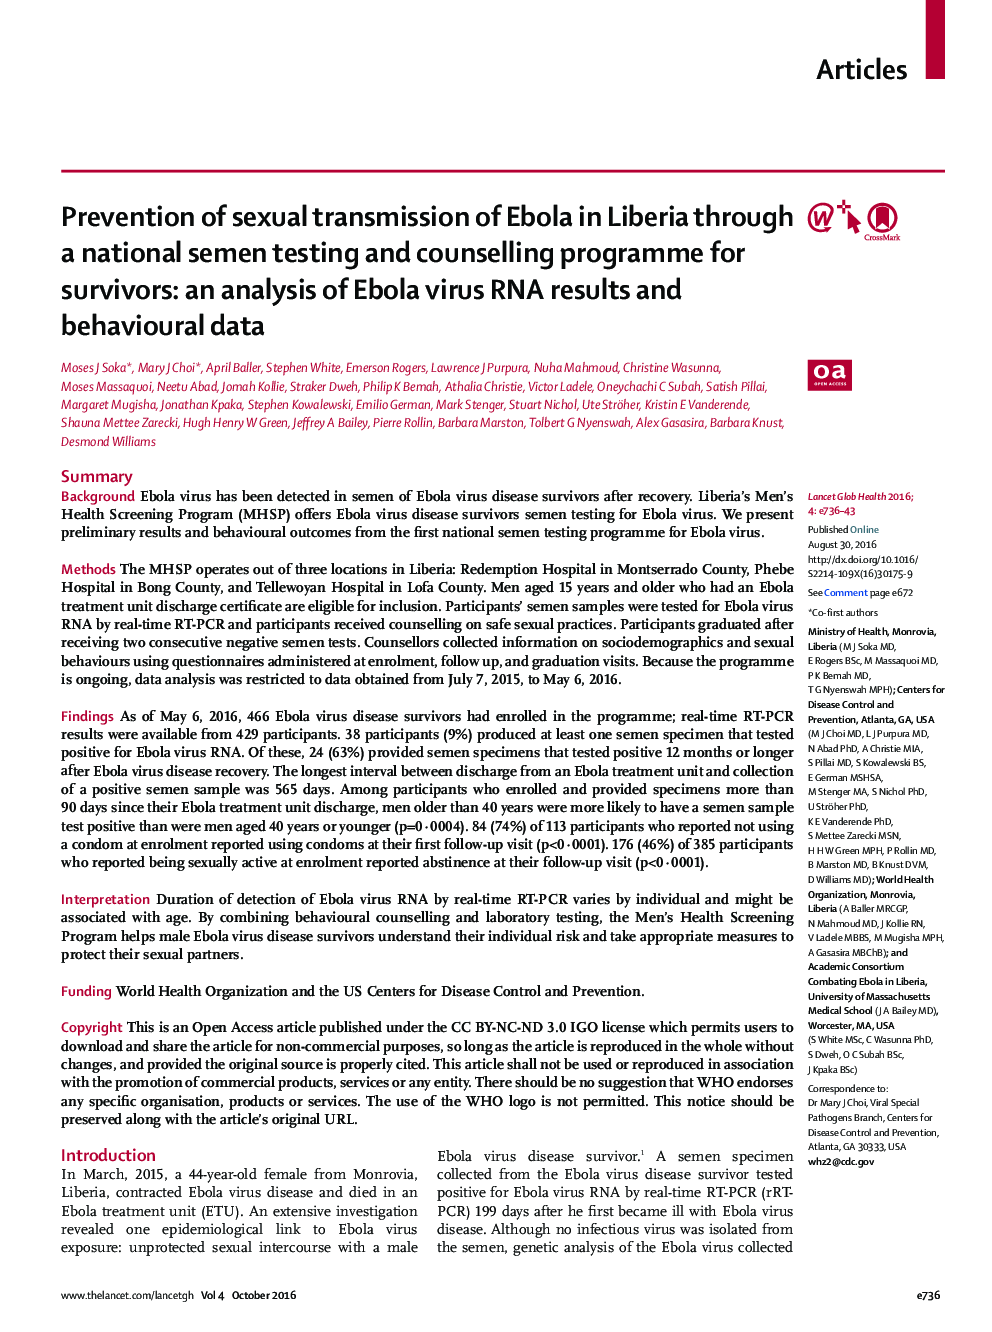 پیشگیری از انتقال جنسی ابولا در لیبریا از طریق یک آزمون ملی منی و برنامه مشاوره برای بازماندگان: تجزیه و تحلیل از نتایج ویروس RNA ابولا و داده های رفتاری